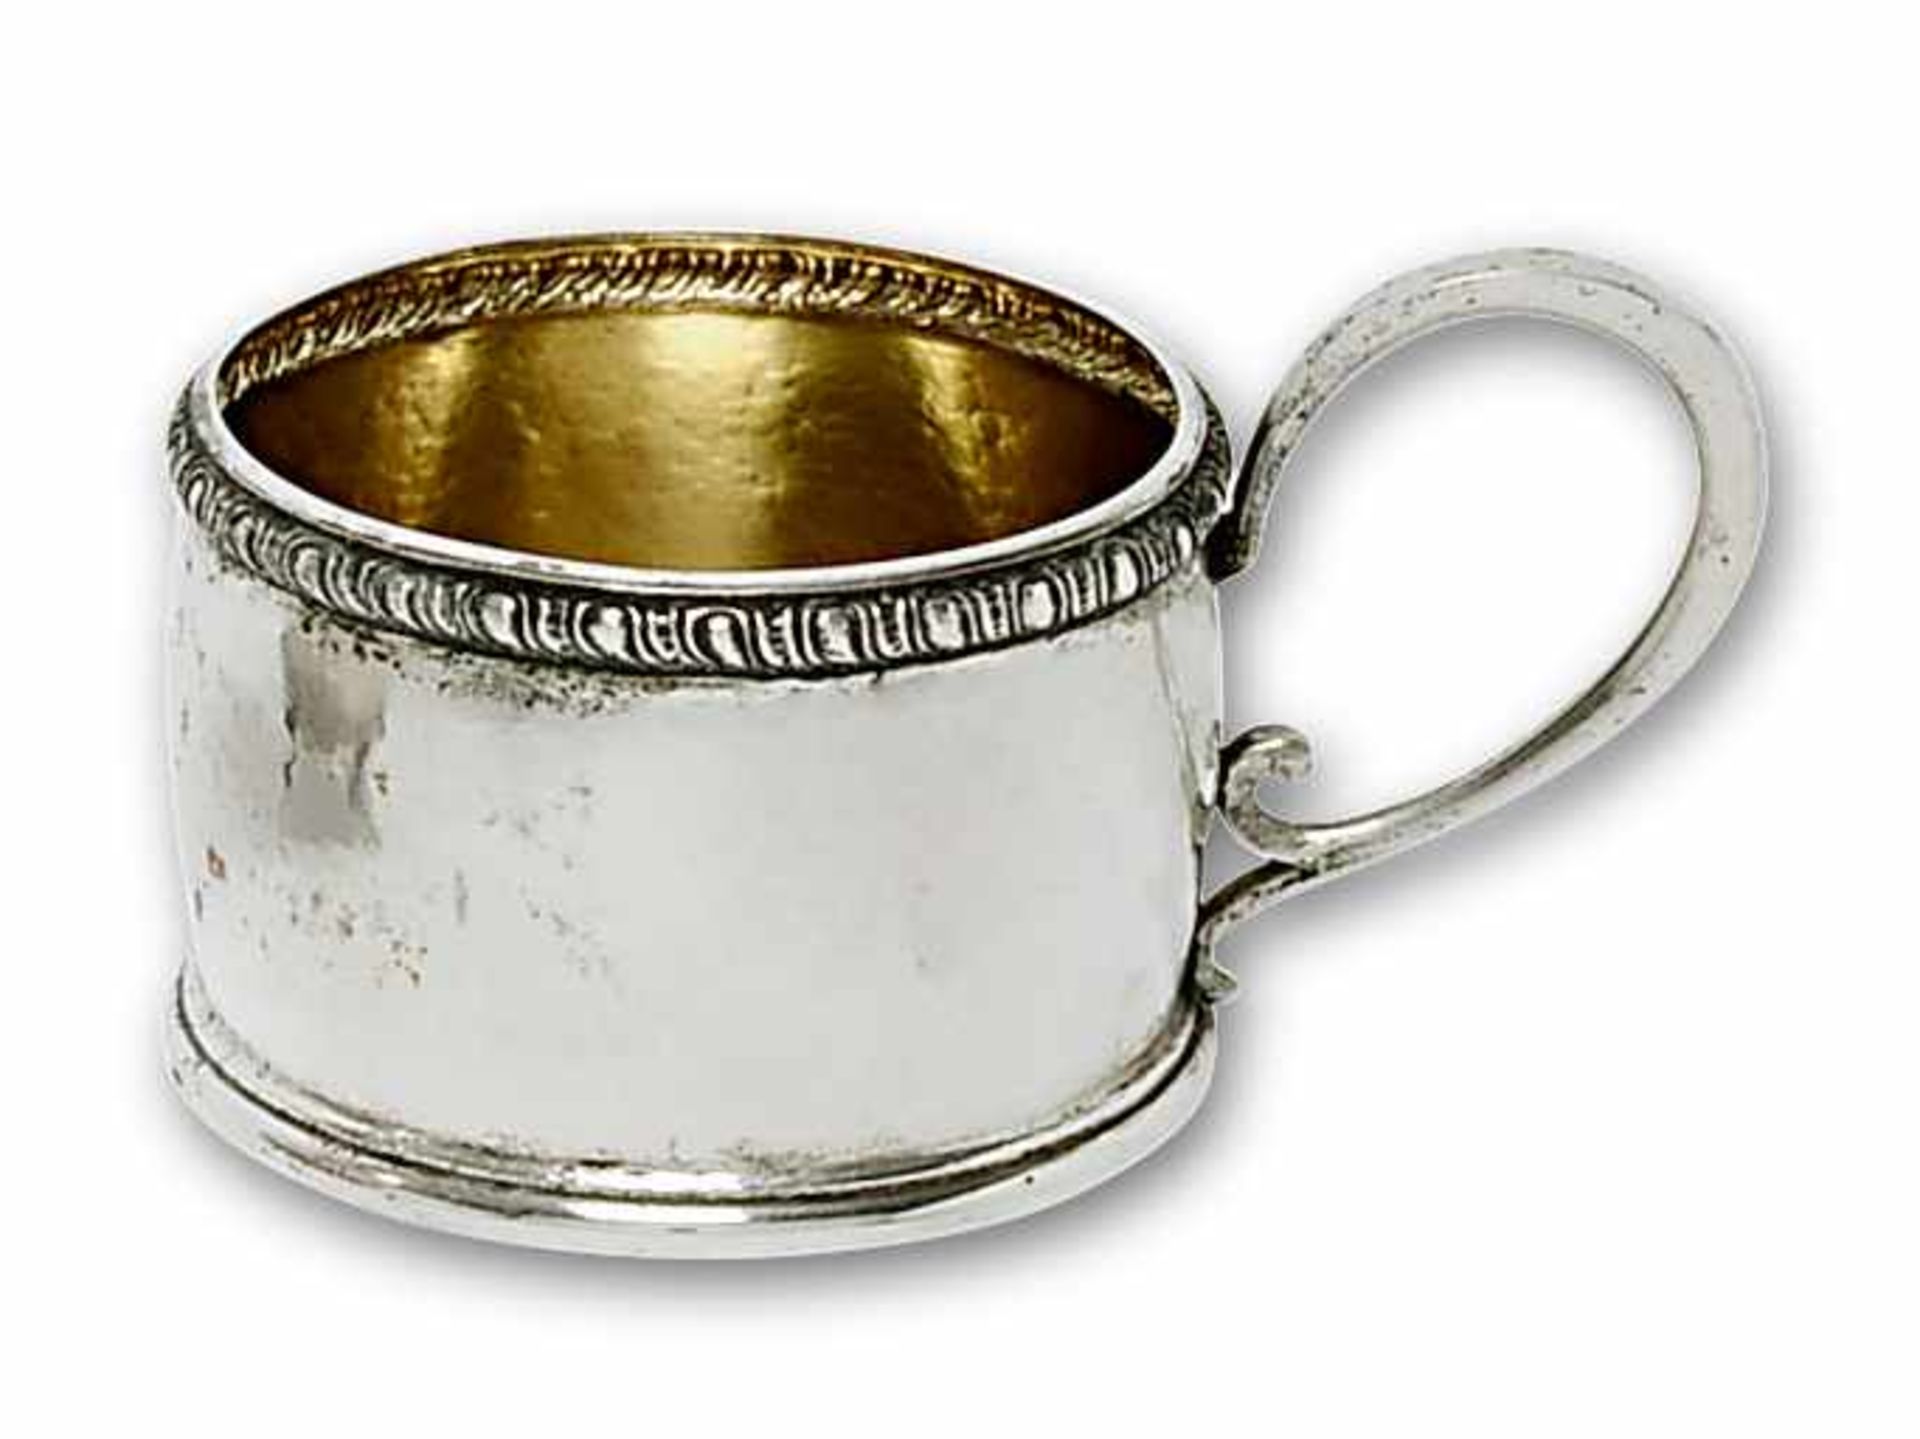 Sechs Teeglashalter München, M. T. Wetzlar, um 1930 Silber, innen vergoldet. Martellierte, leicht